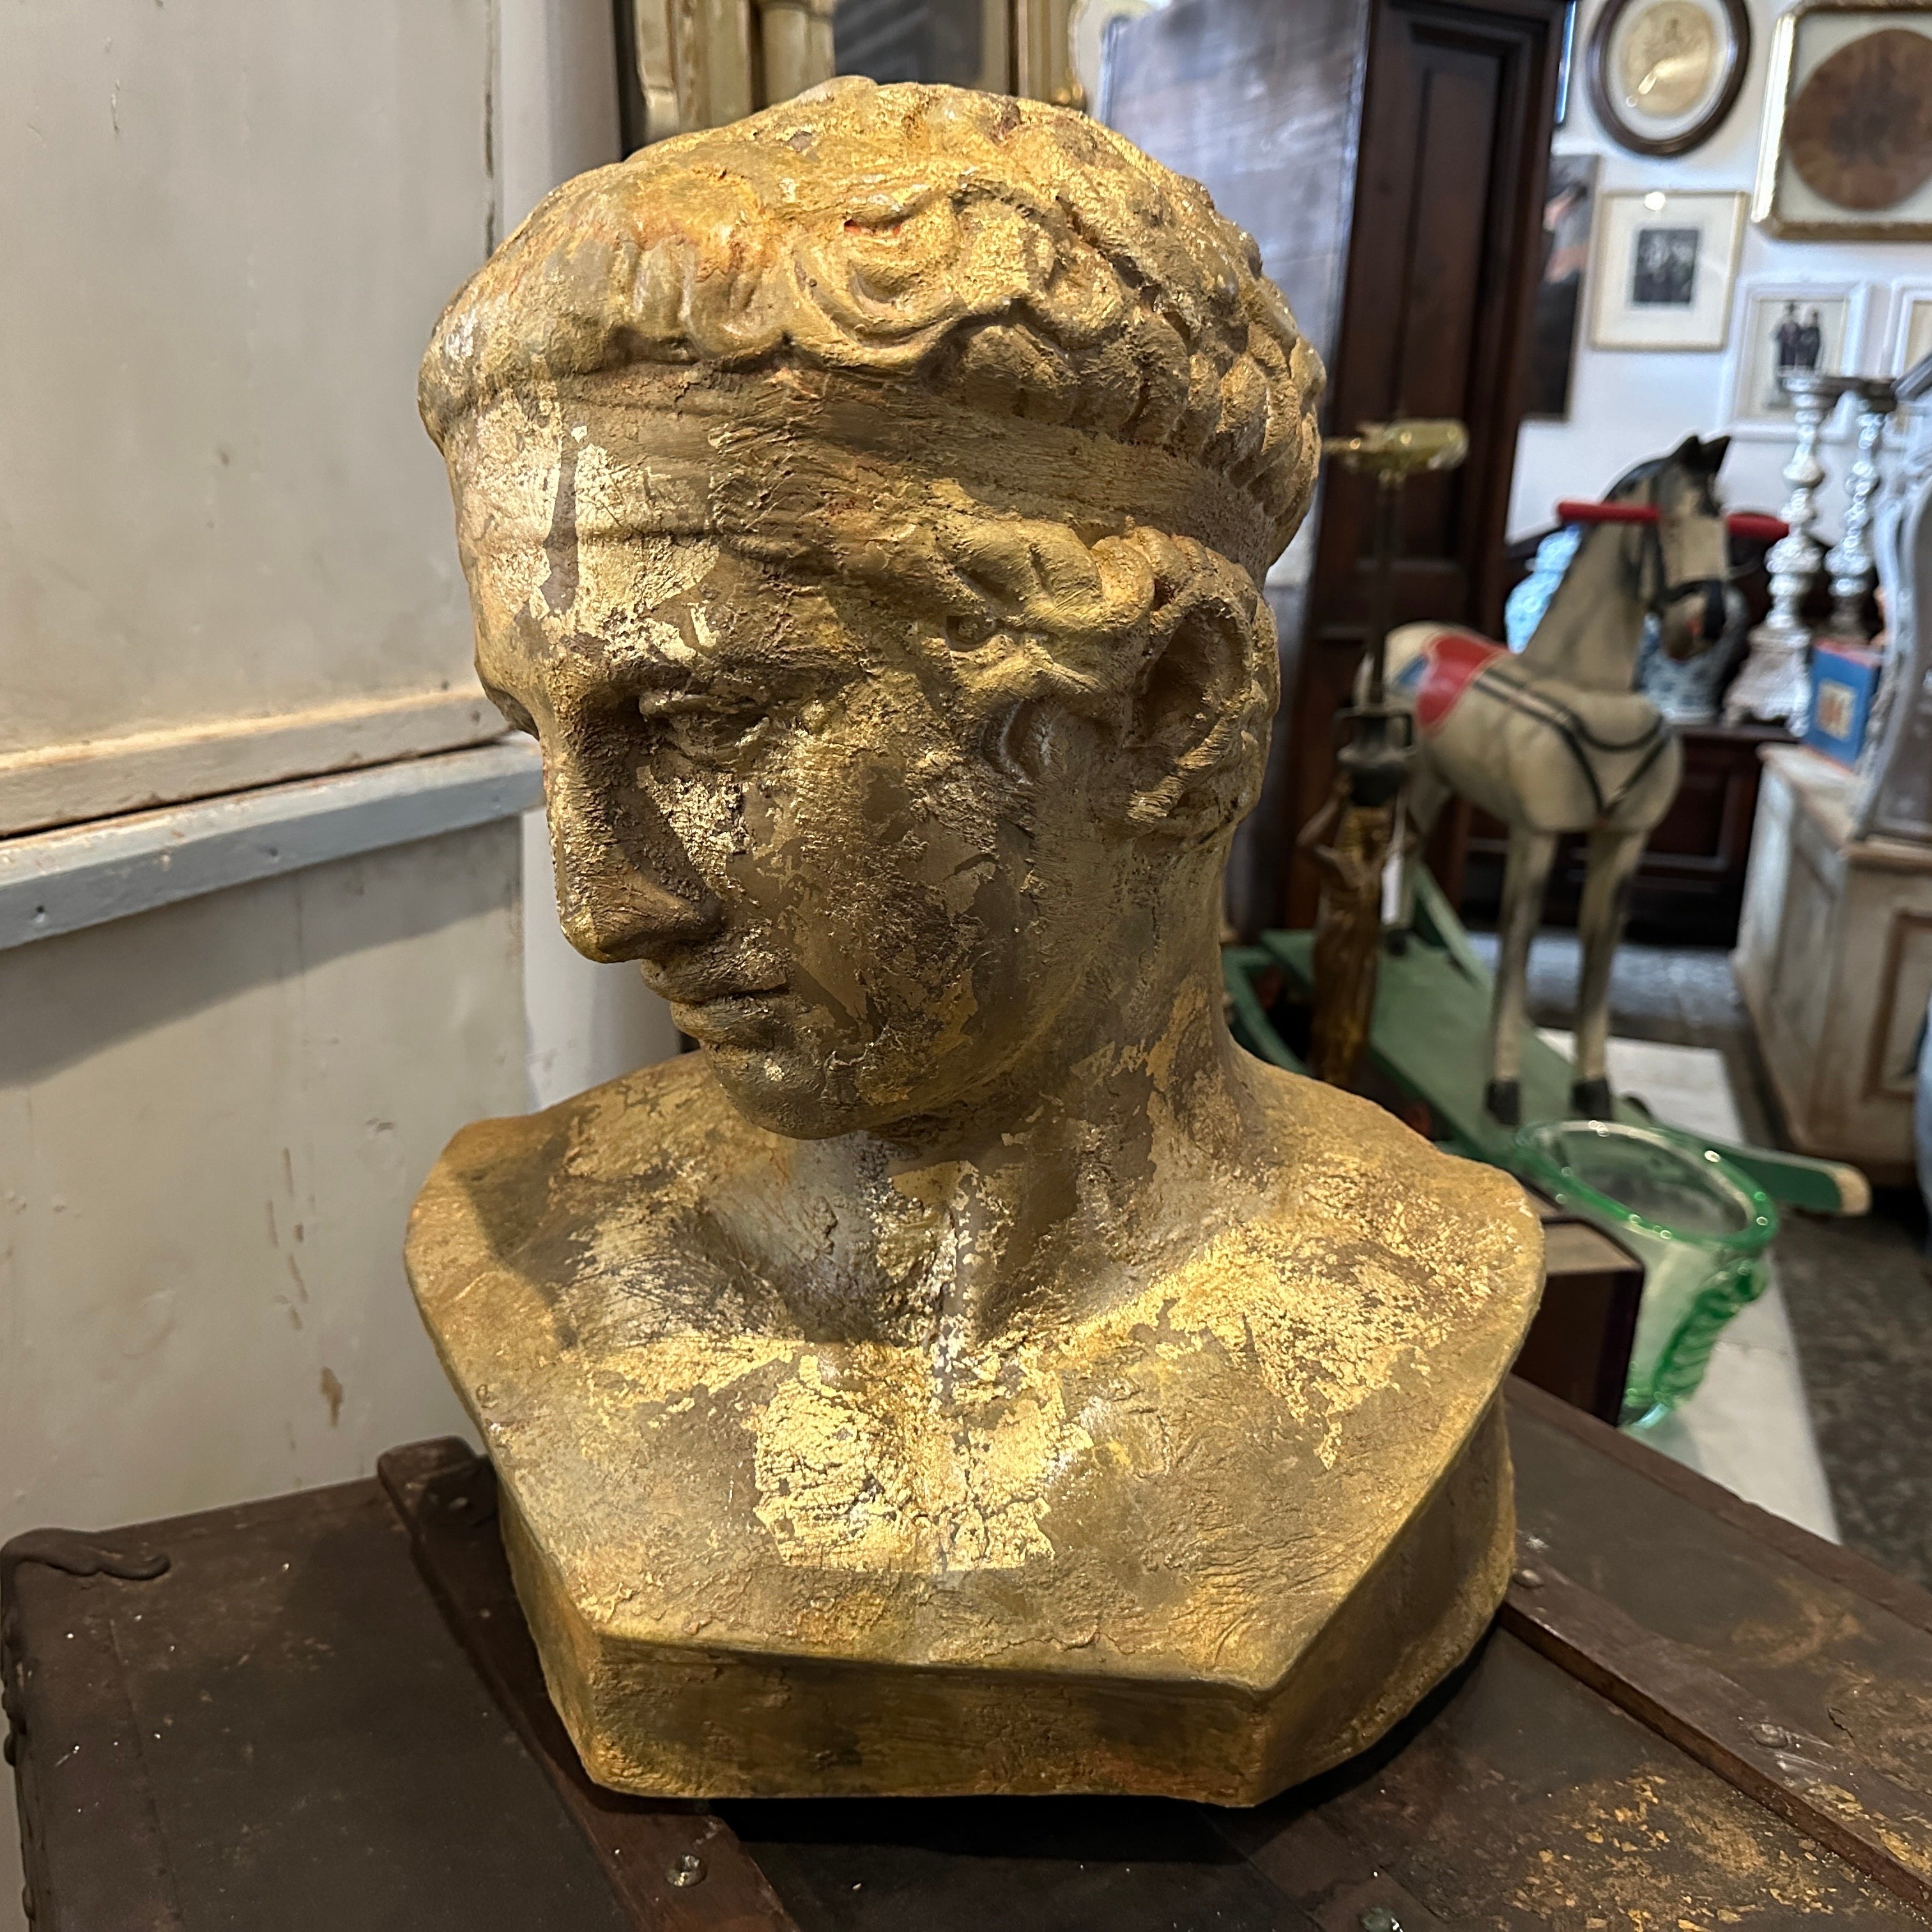 Buste en plâtre patiné à l'or de Diptych Fine Arts provenant d'une gipsoteca de l'académie sicilienne des beaux-arts. Les plâtres étaient patinés de différentes manières, celui-ci a été réalisé avec de l'or, de l'ambre et du marron pour ce résultat